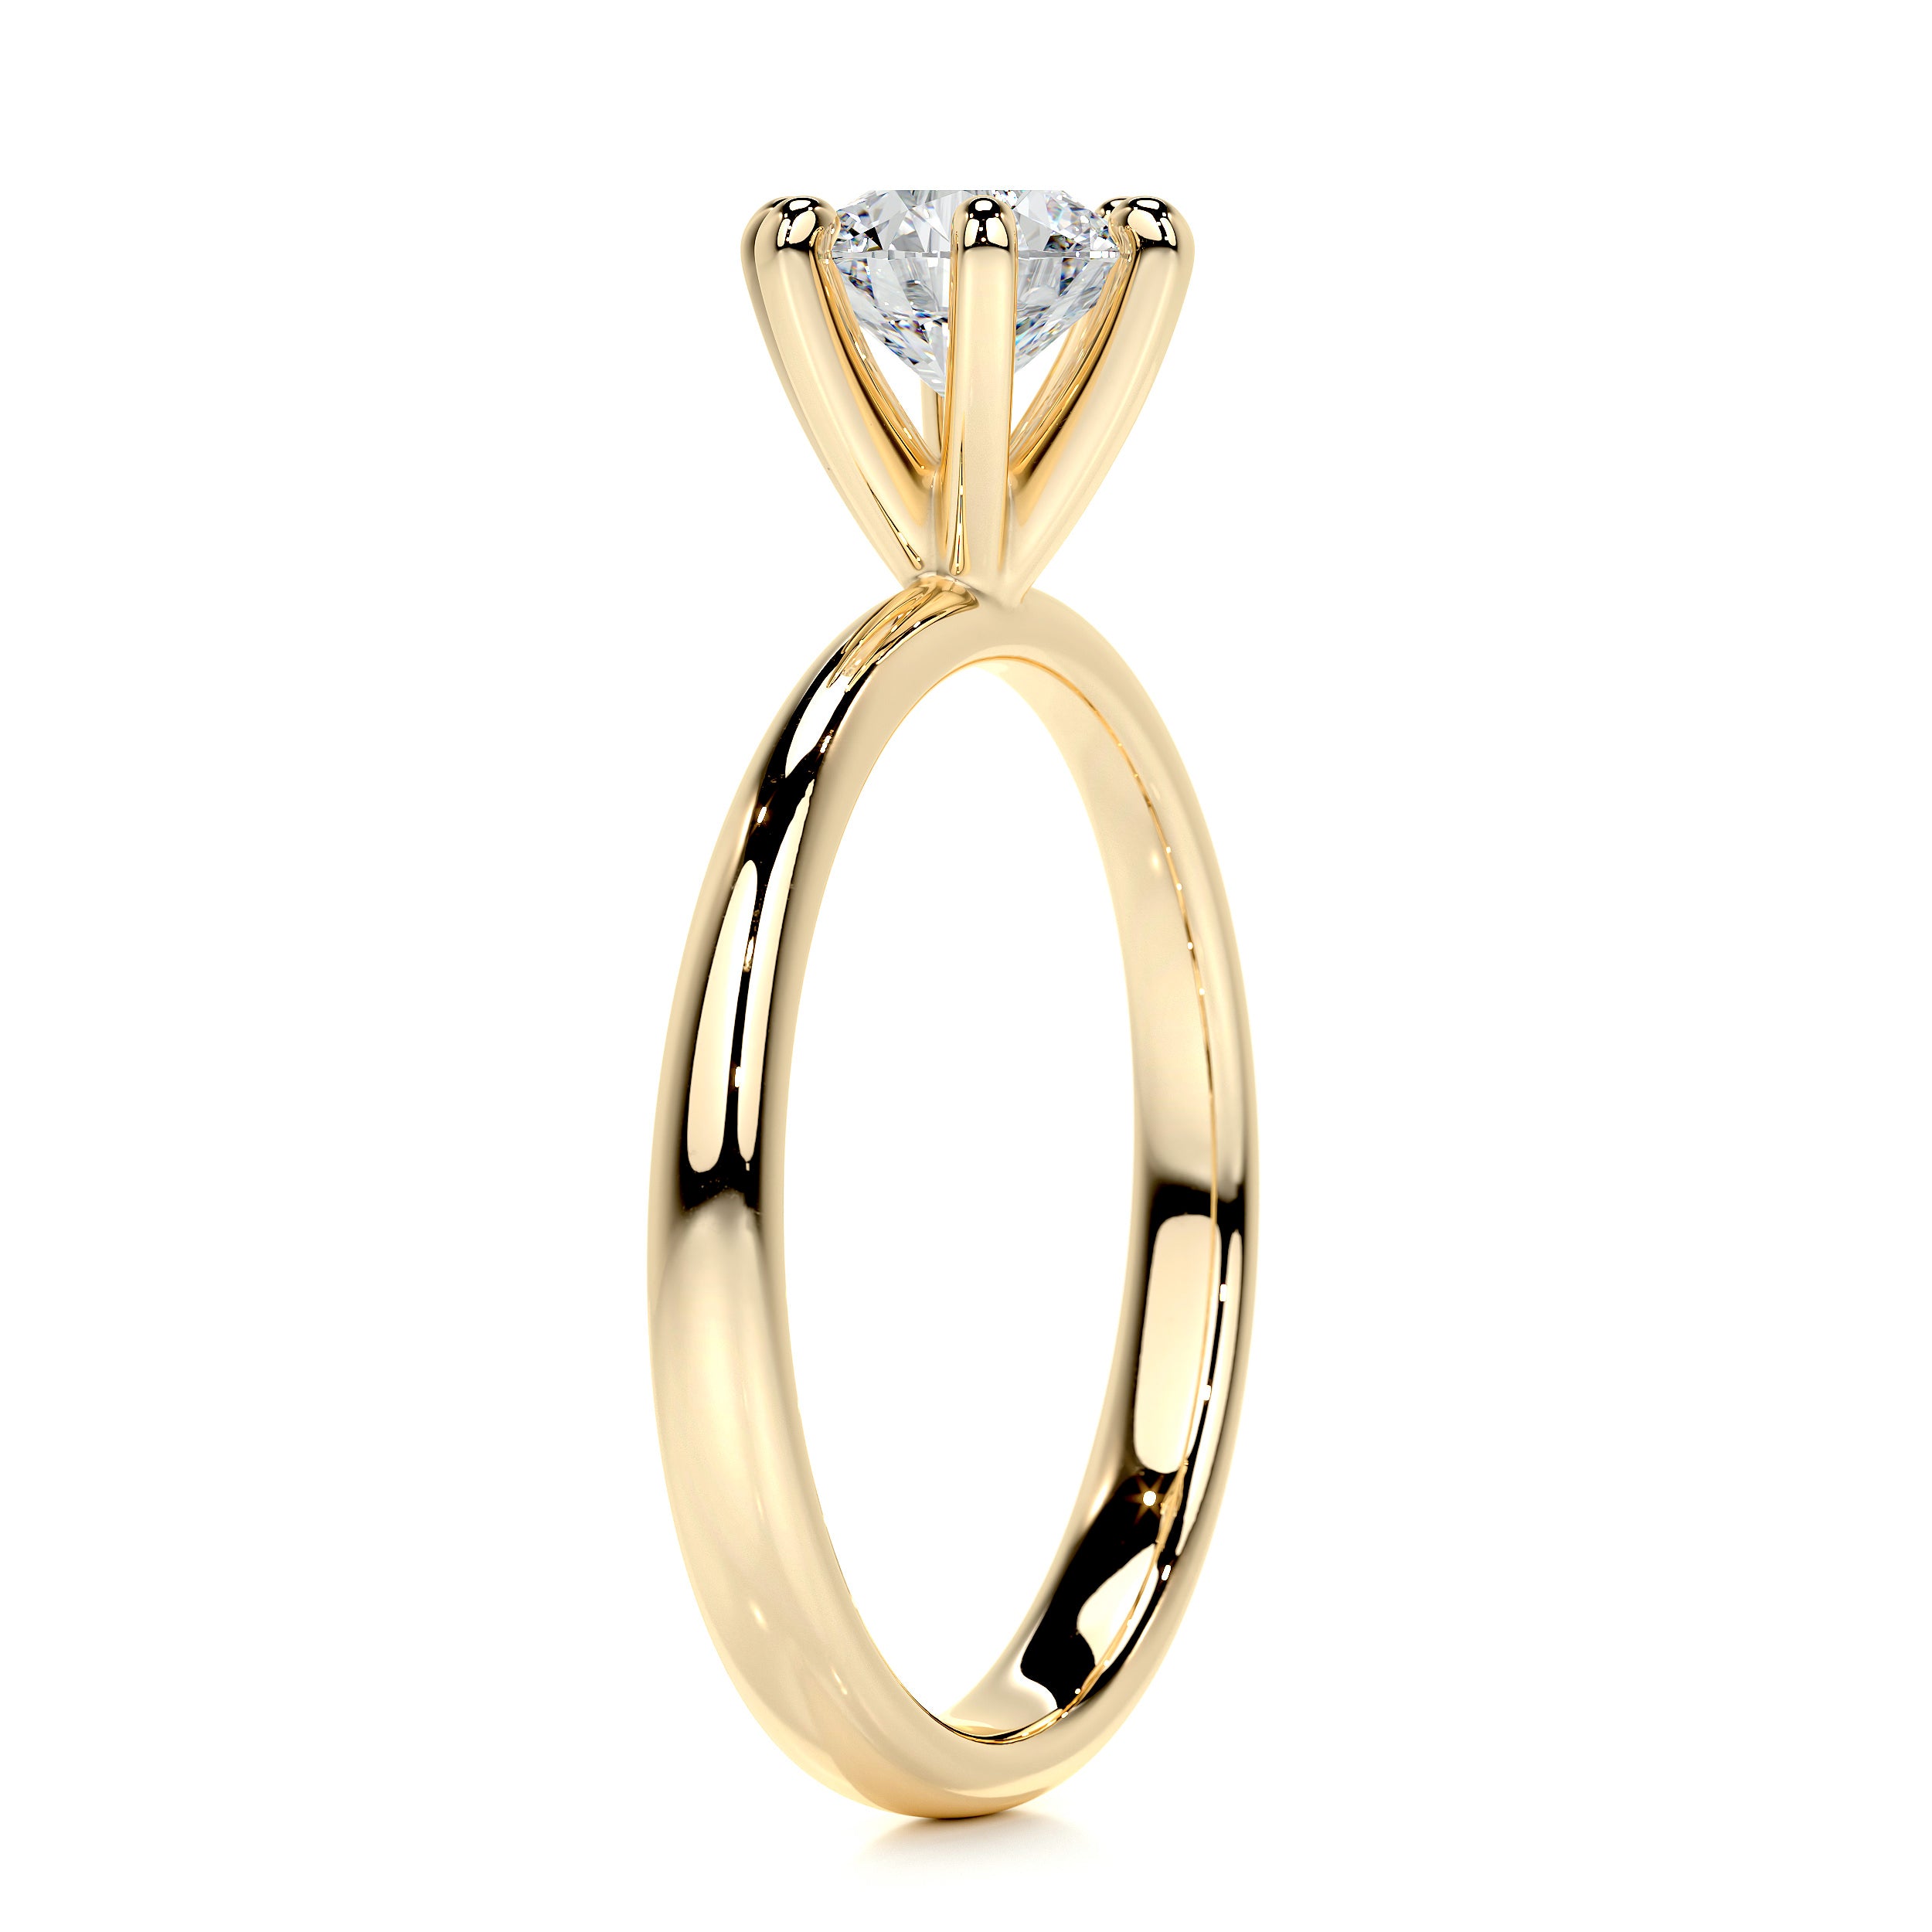 Samantha Diamond Engagement Ring   (0.75 Carat) -18K Yellow Gold